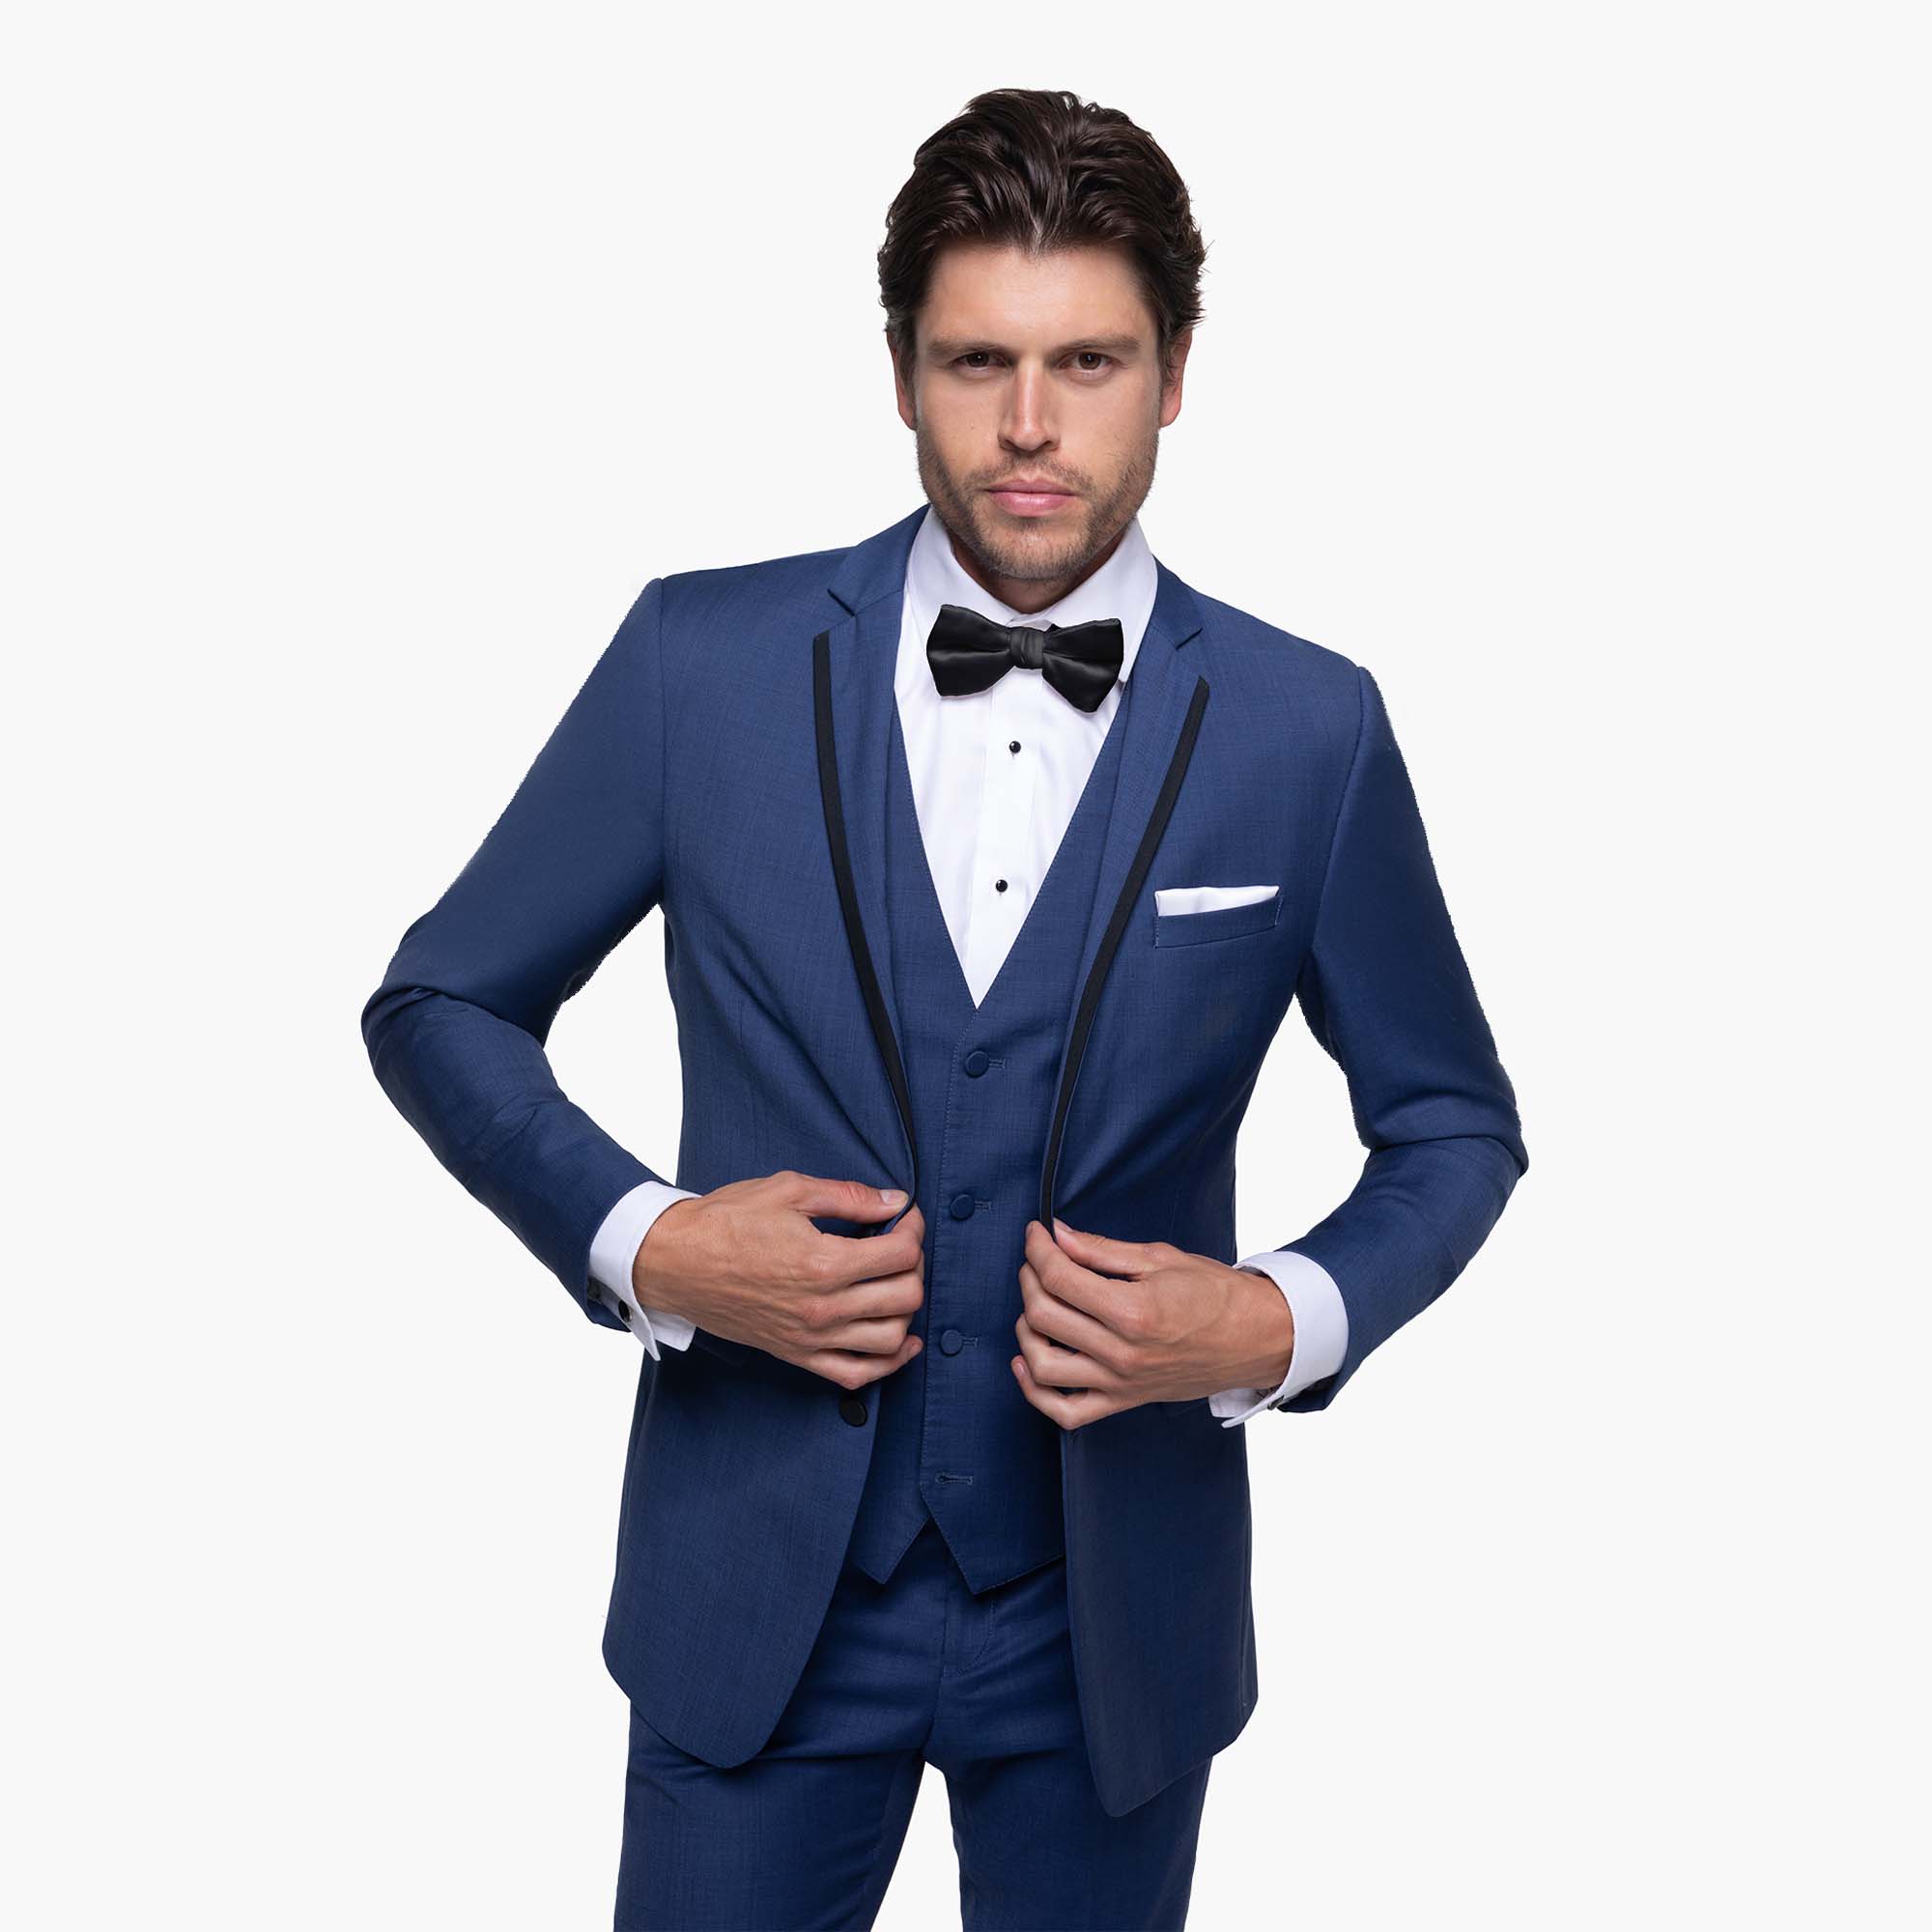 M7182-NP-PK: Blue Modern Fit 3 Piece Suit